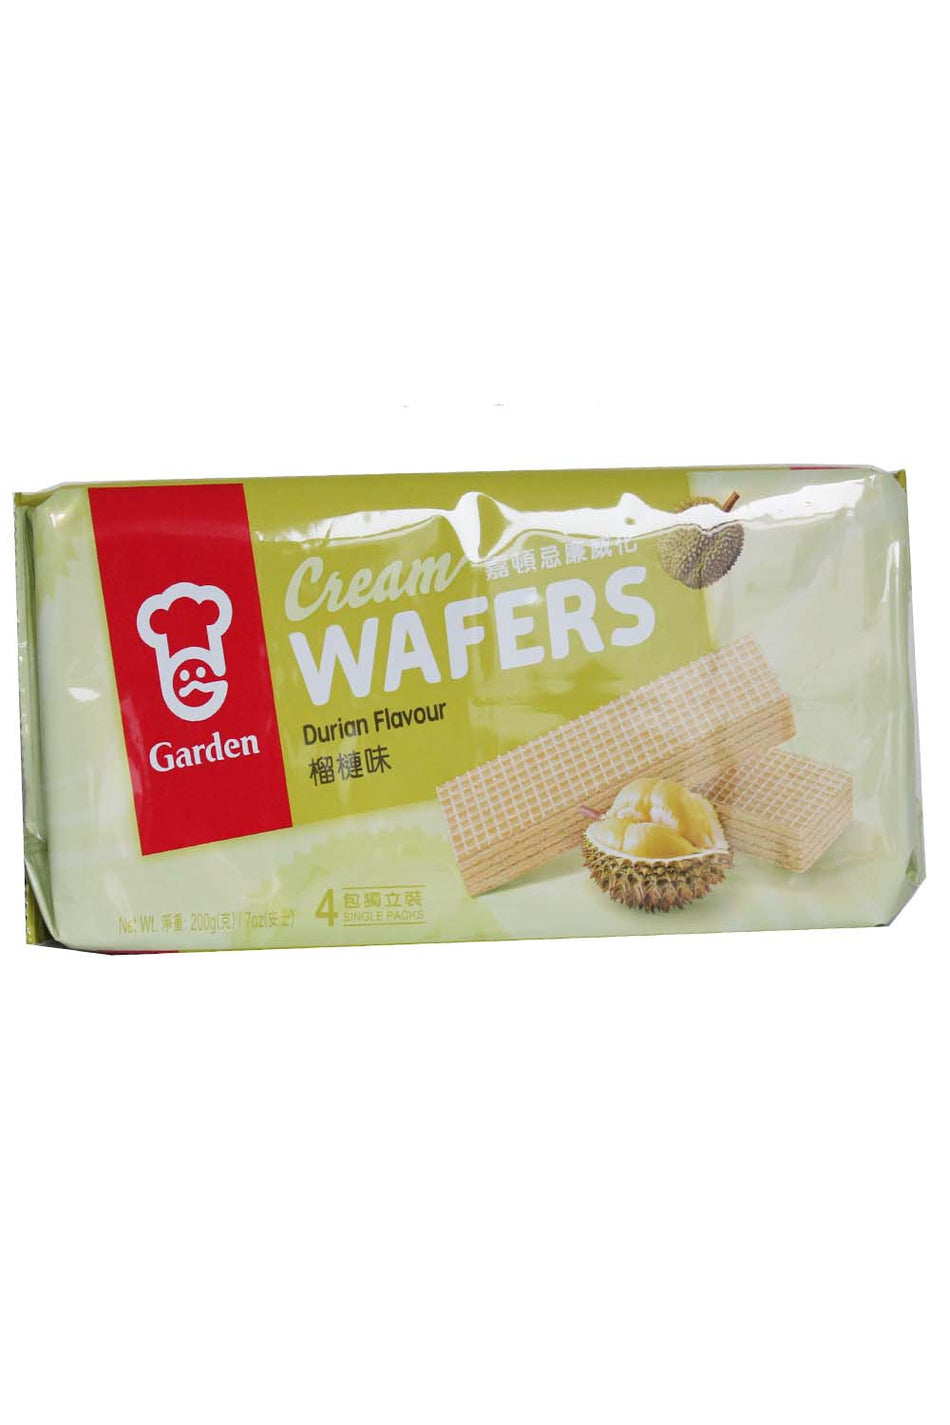 Garden Durian Flavored Cream Wafers